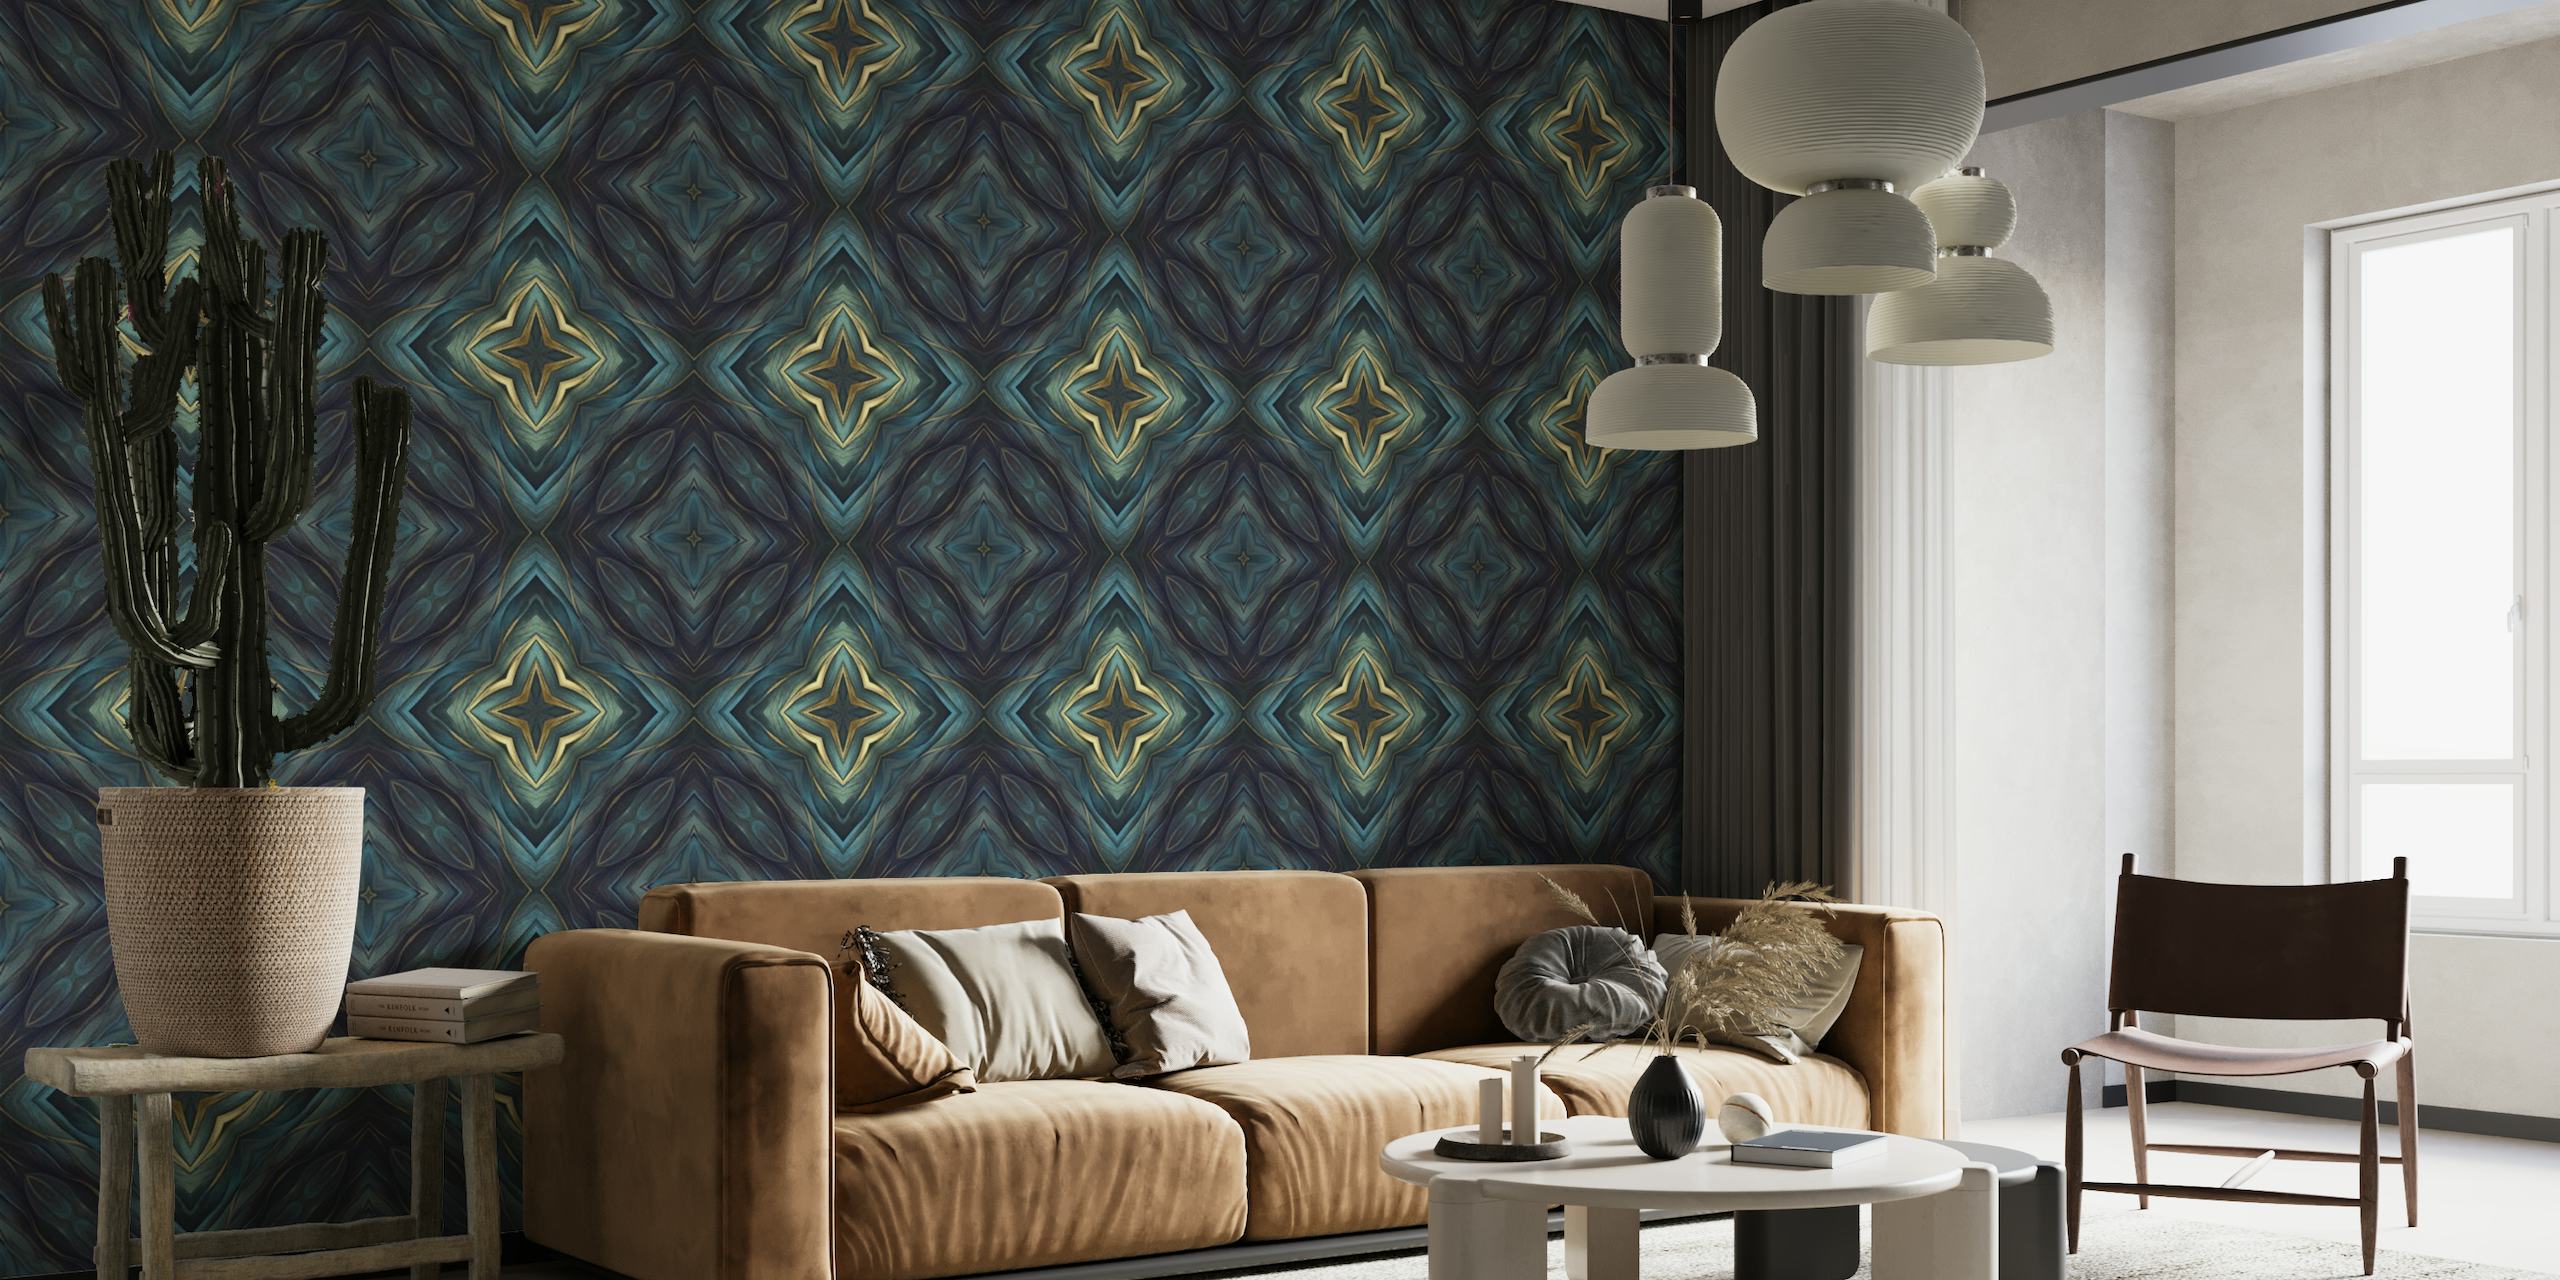 Artisanal Mediterranean Tile Design Blue Gold_2 tapete